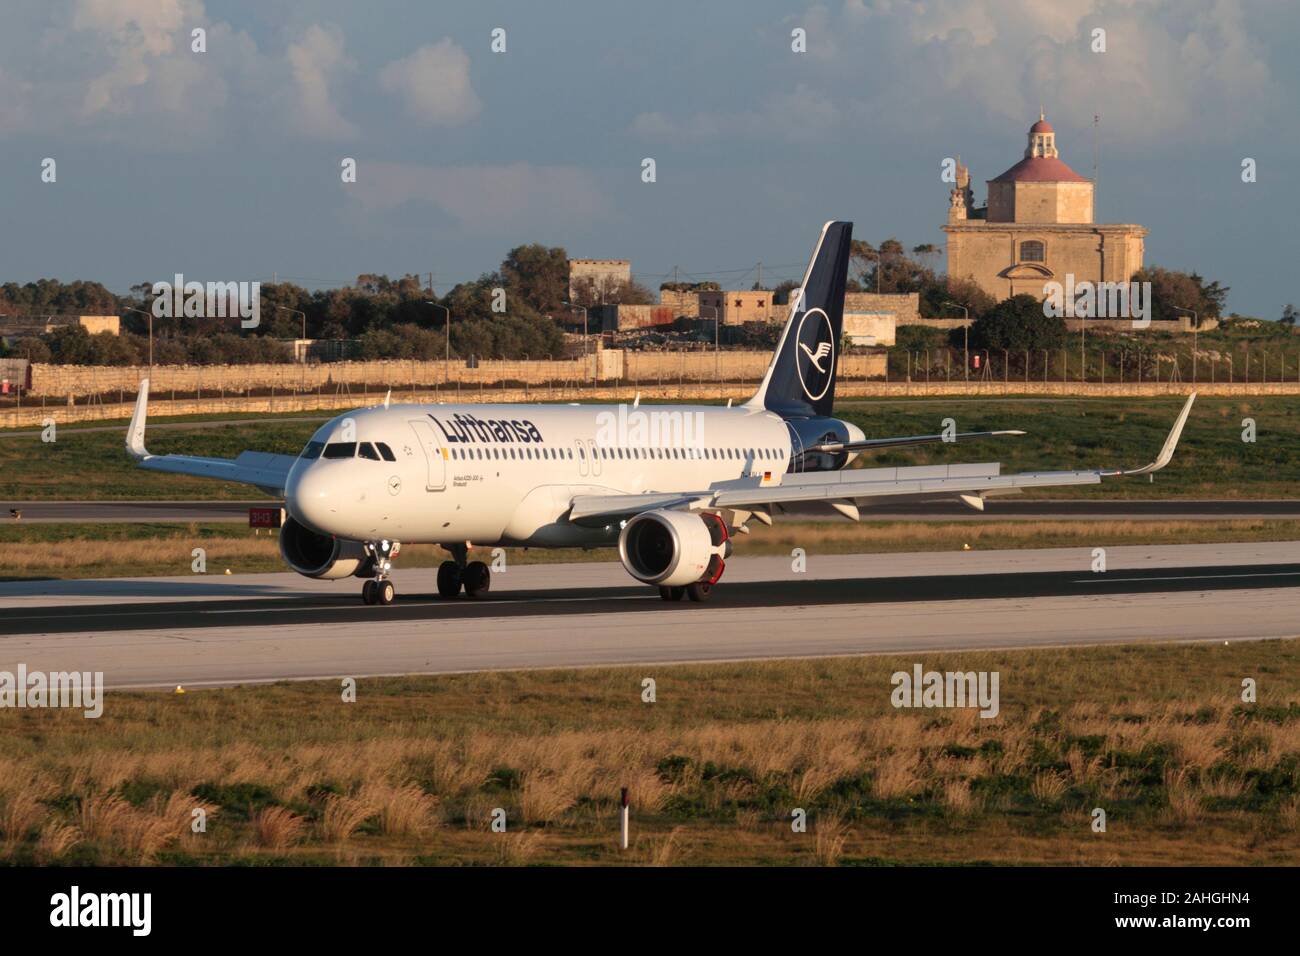 Airbus A320-200 jet nei nuovi colori della compagnia aerea tedesca Lufthansa sulla pista dopo l'atterraggio all'aeroporto di Malta. Viaggi aerei nell'UE. Foto Stock